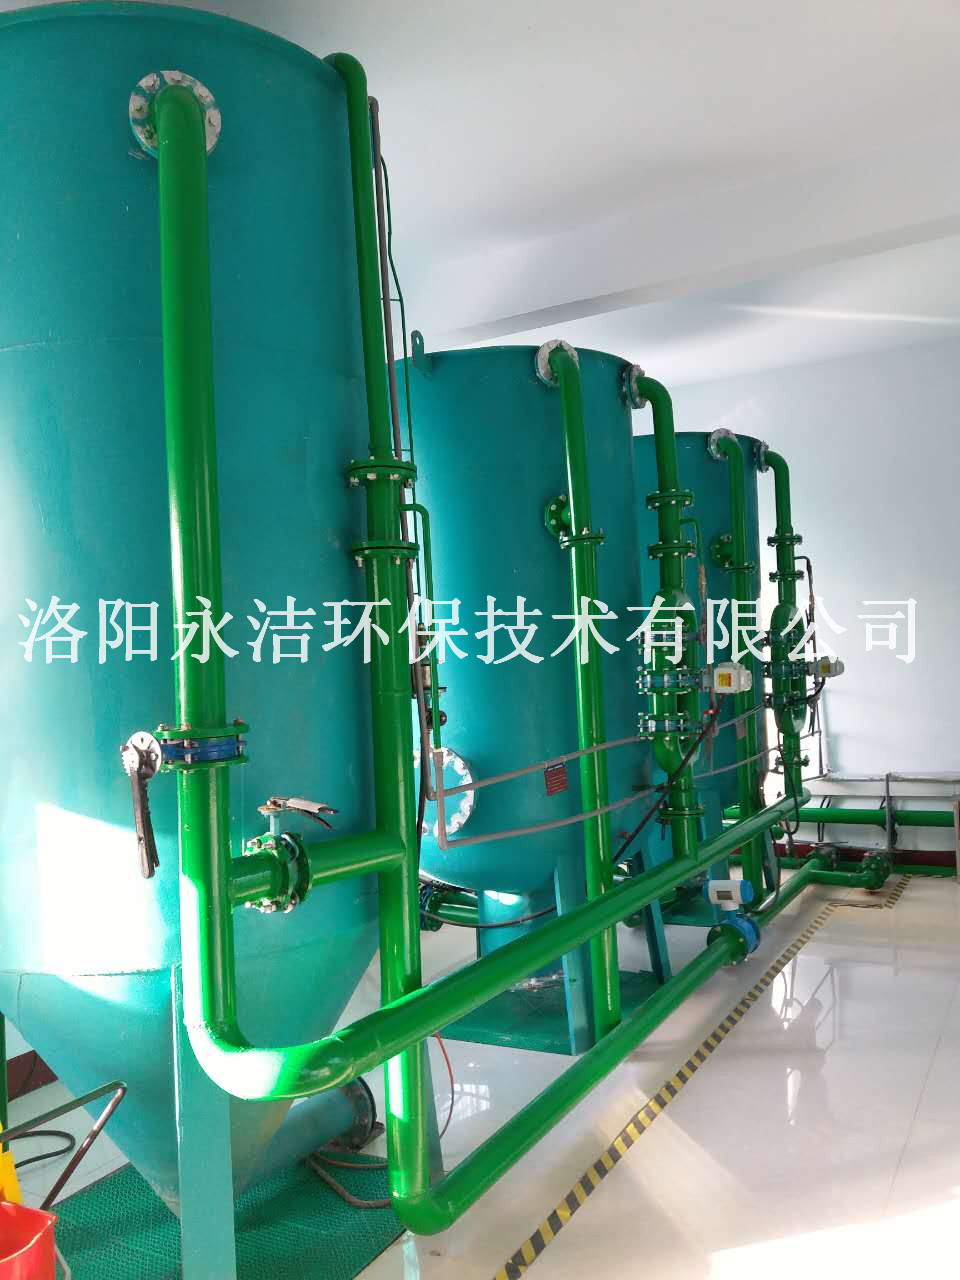 地埋式污水處理設備的厭氧發酵技術